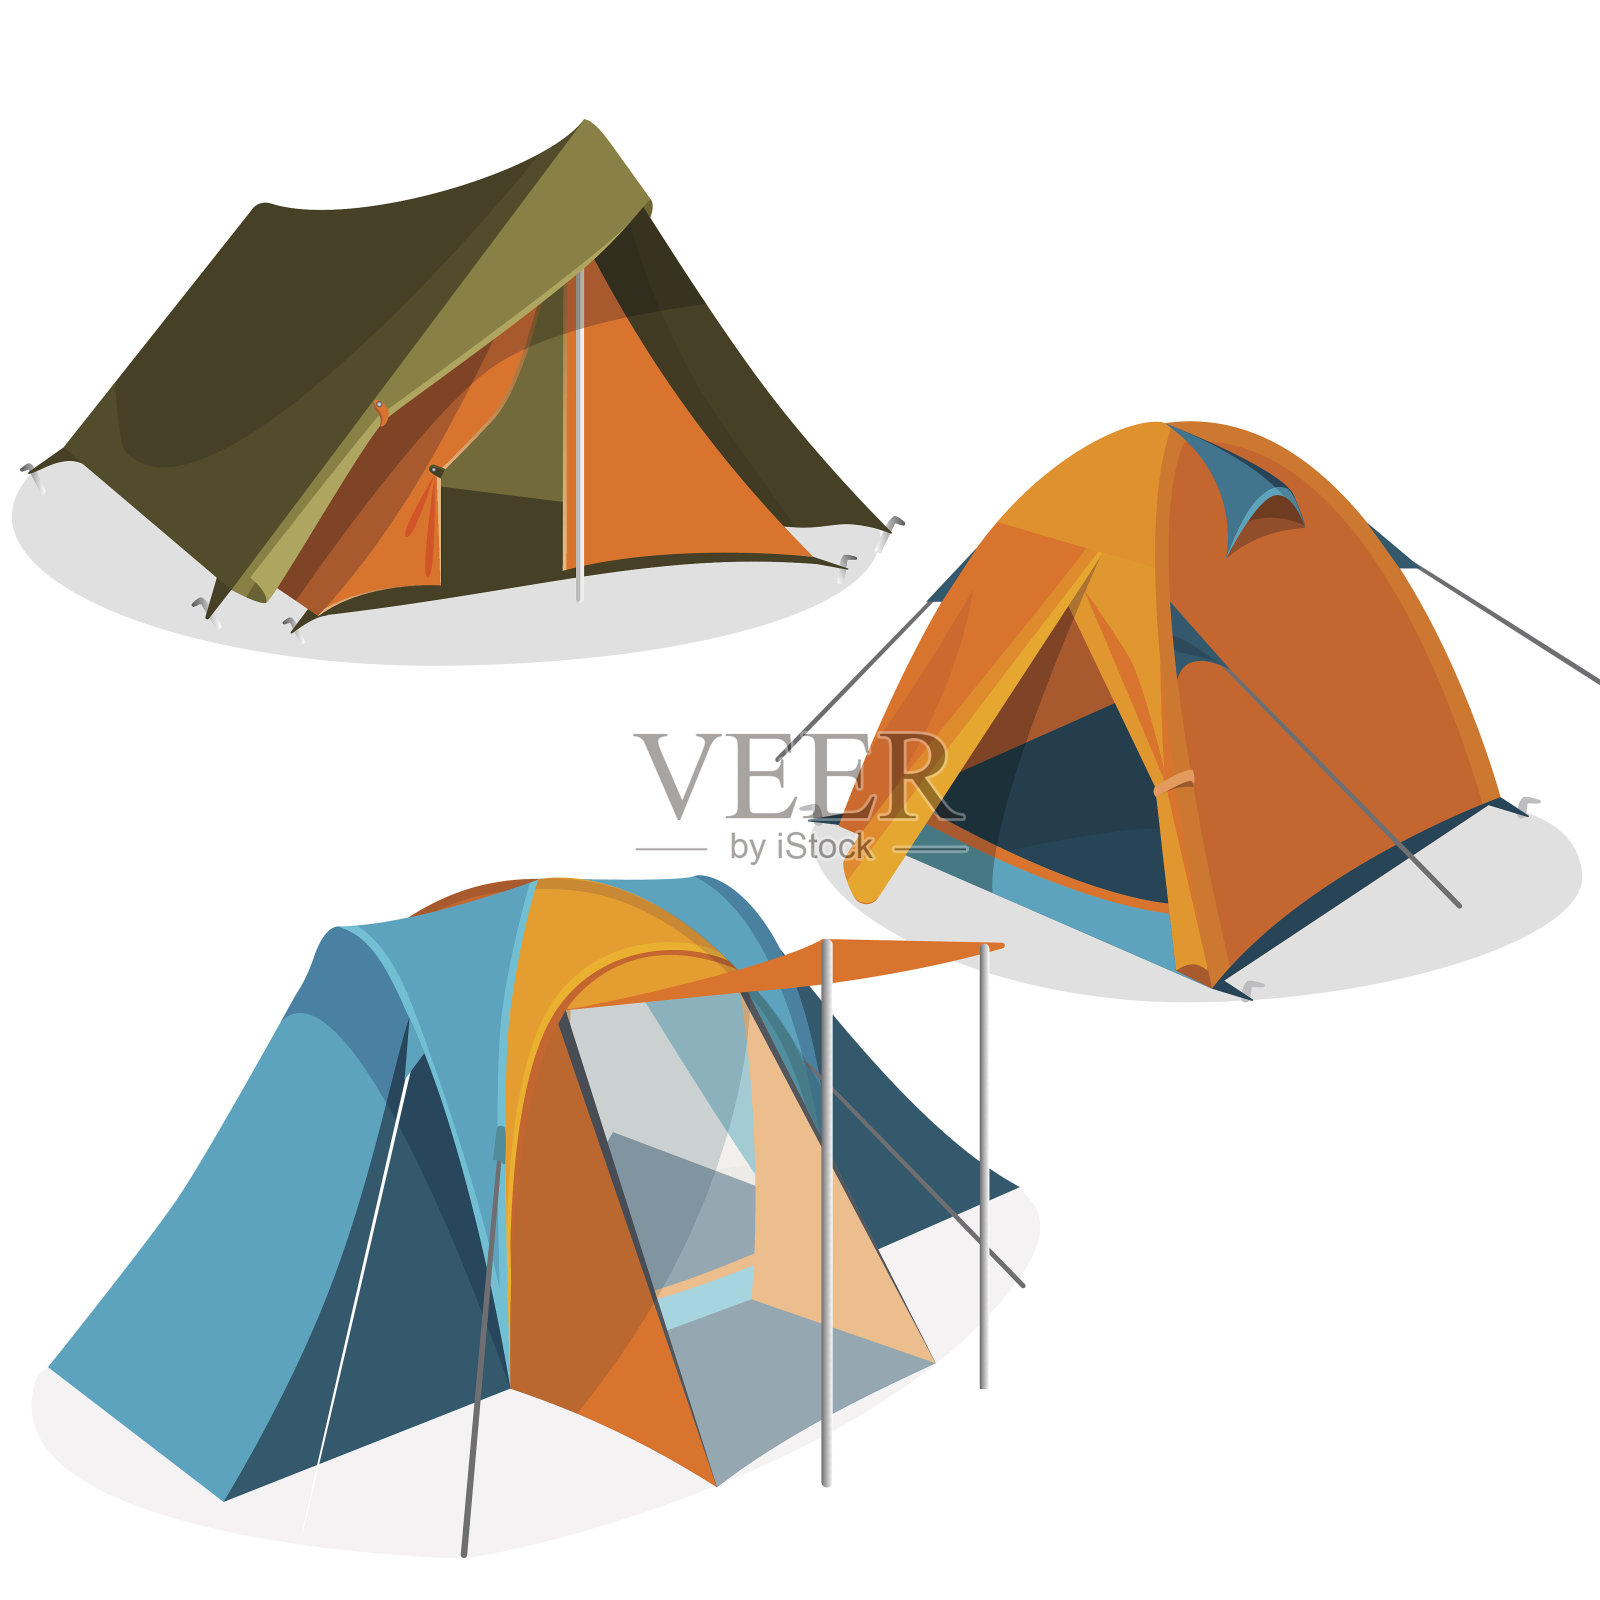 遮阳篷旅游露营帐篷图标收藏。远足亭矢量图设计元素图片